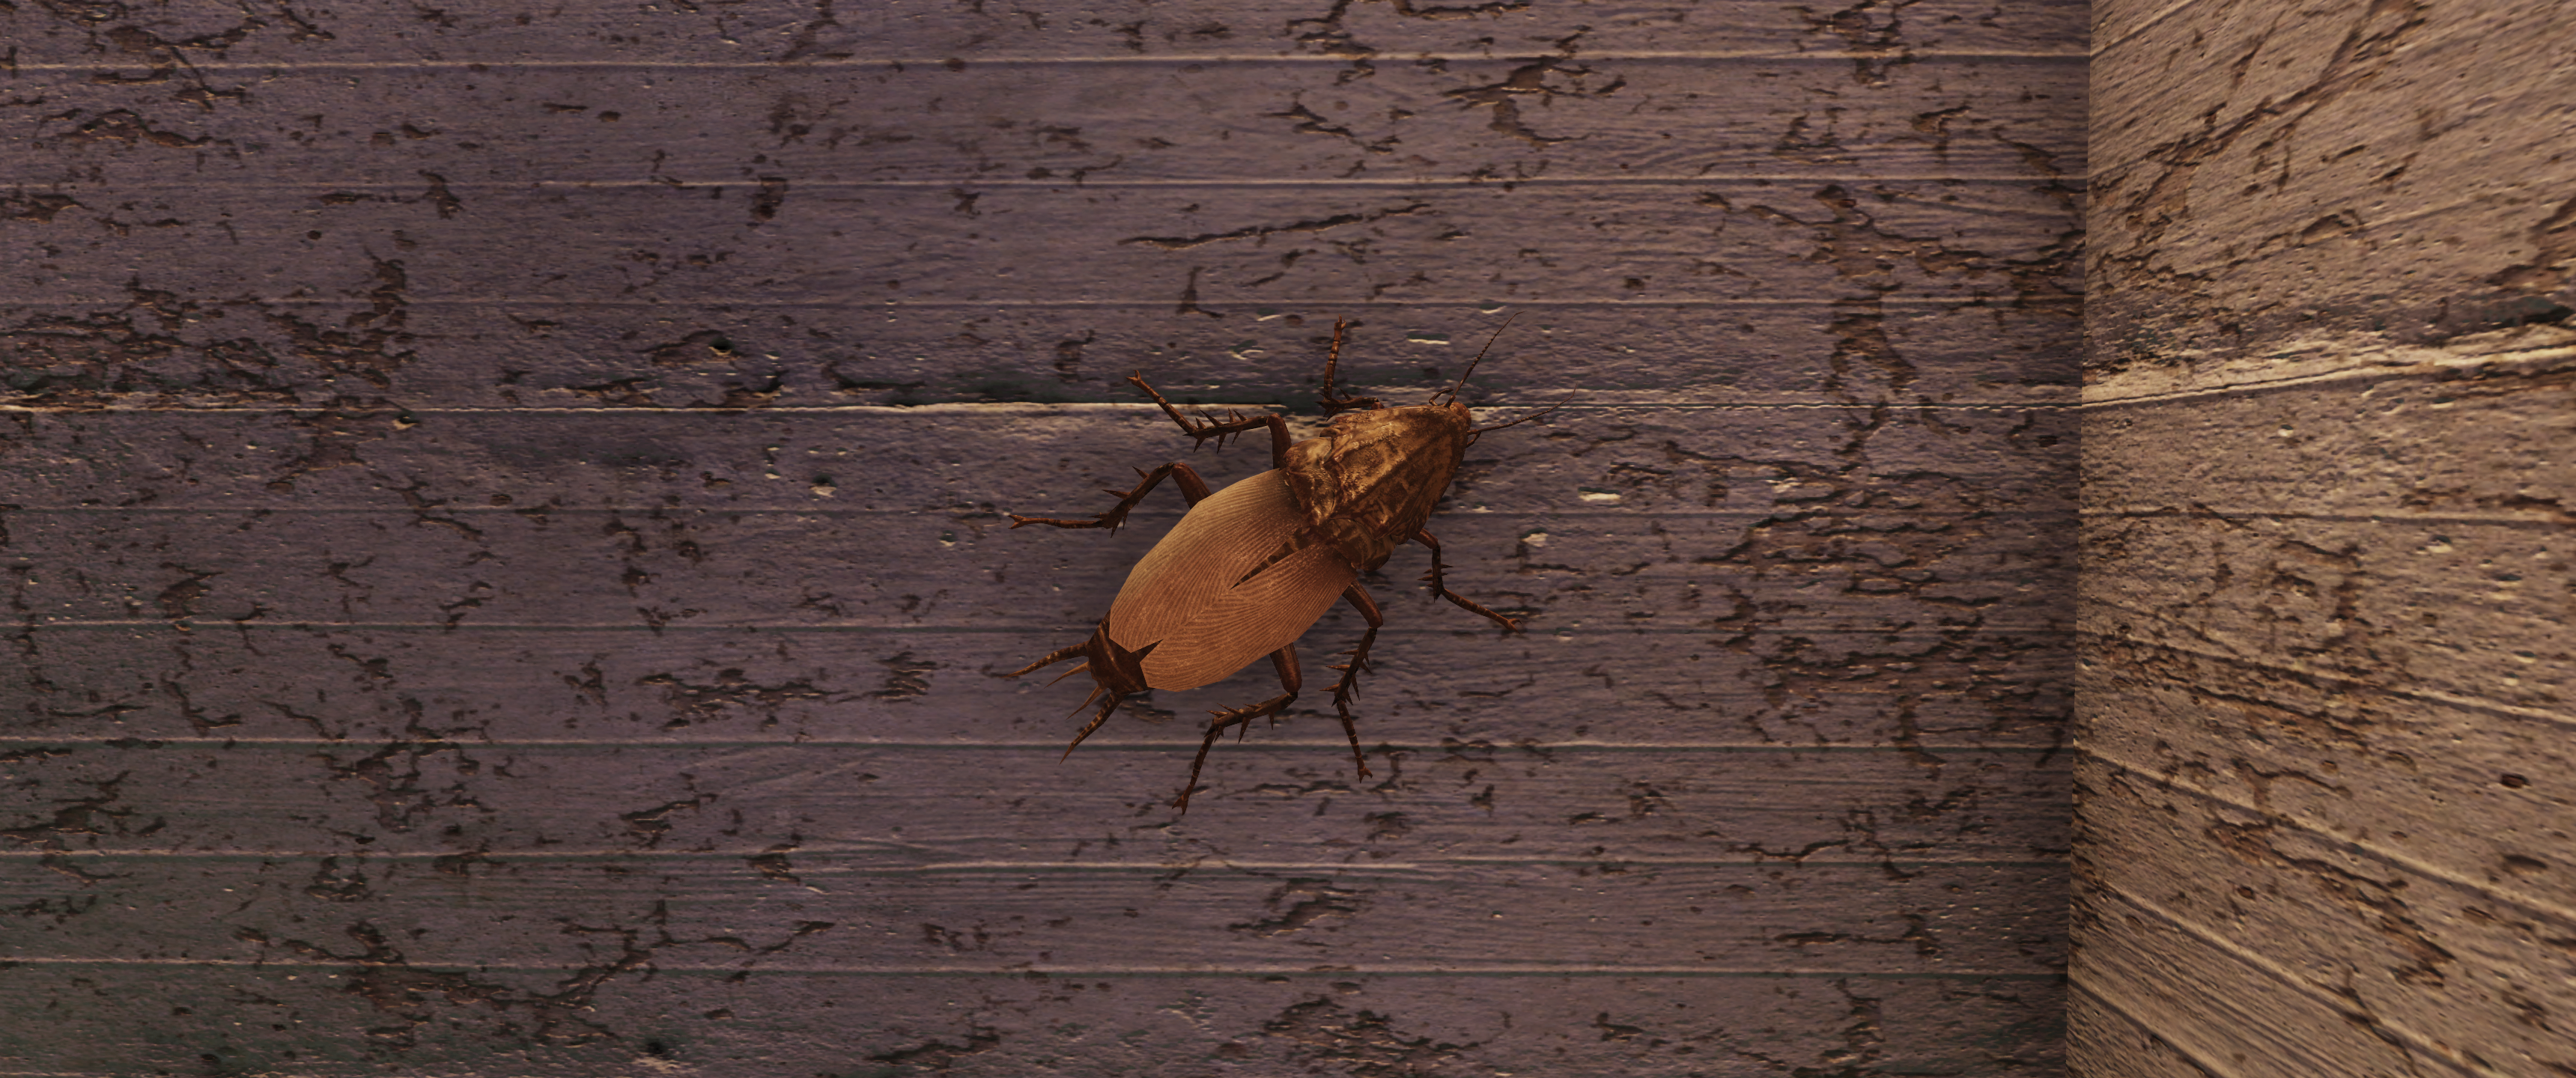 Fallout 76 Fallout Cockroaches Screen Shot 3440x1440